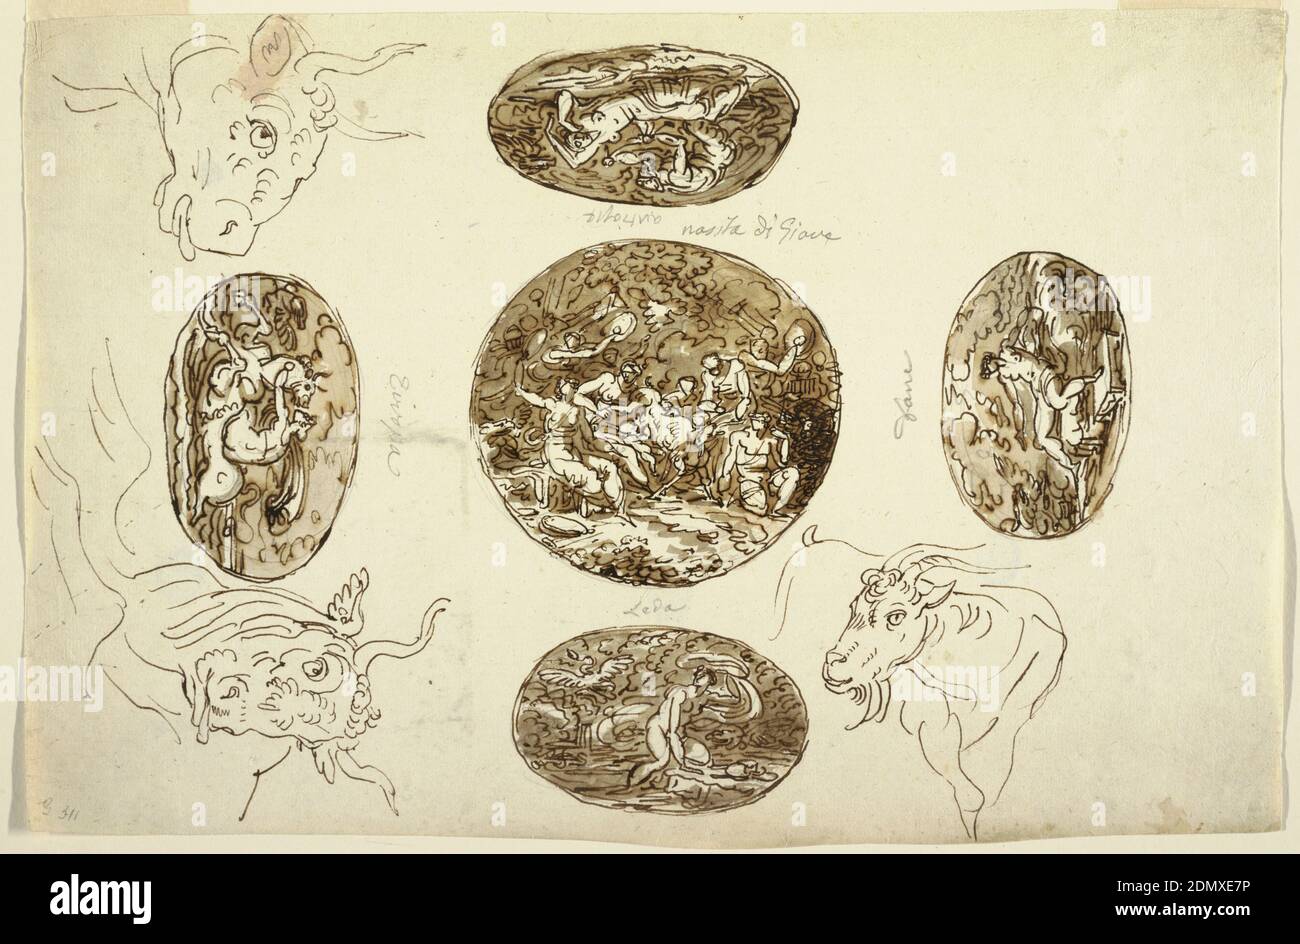 Hechos de Júpiter, por un techo, Felice Giani, italiano, 1758–1823, pluma y  tinta, cepillo y lavar sobre restos de grafito sobre papel colocado,  Júpiter bebé cuidado por las ninfas Adrastea e Ida,